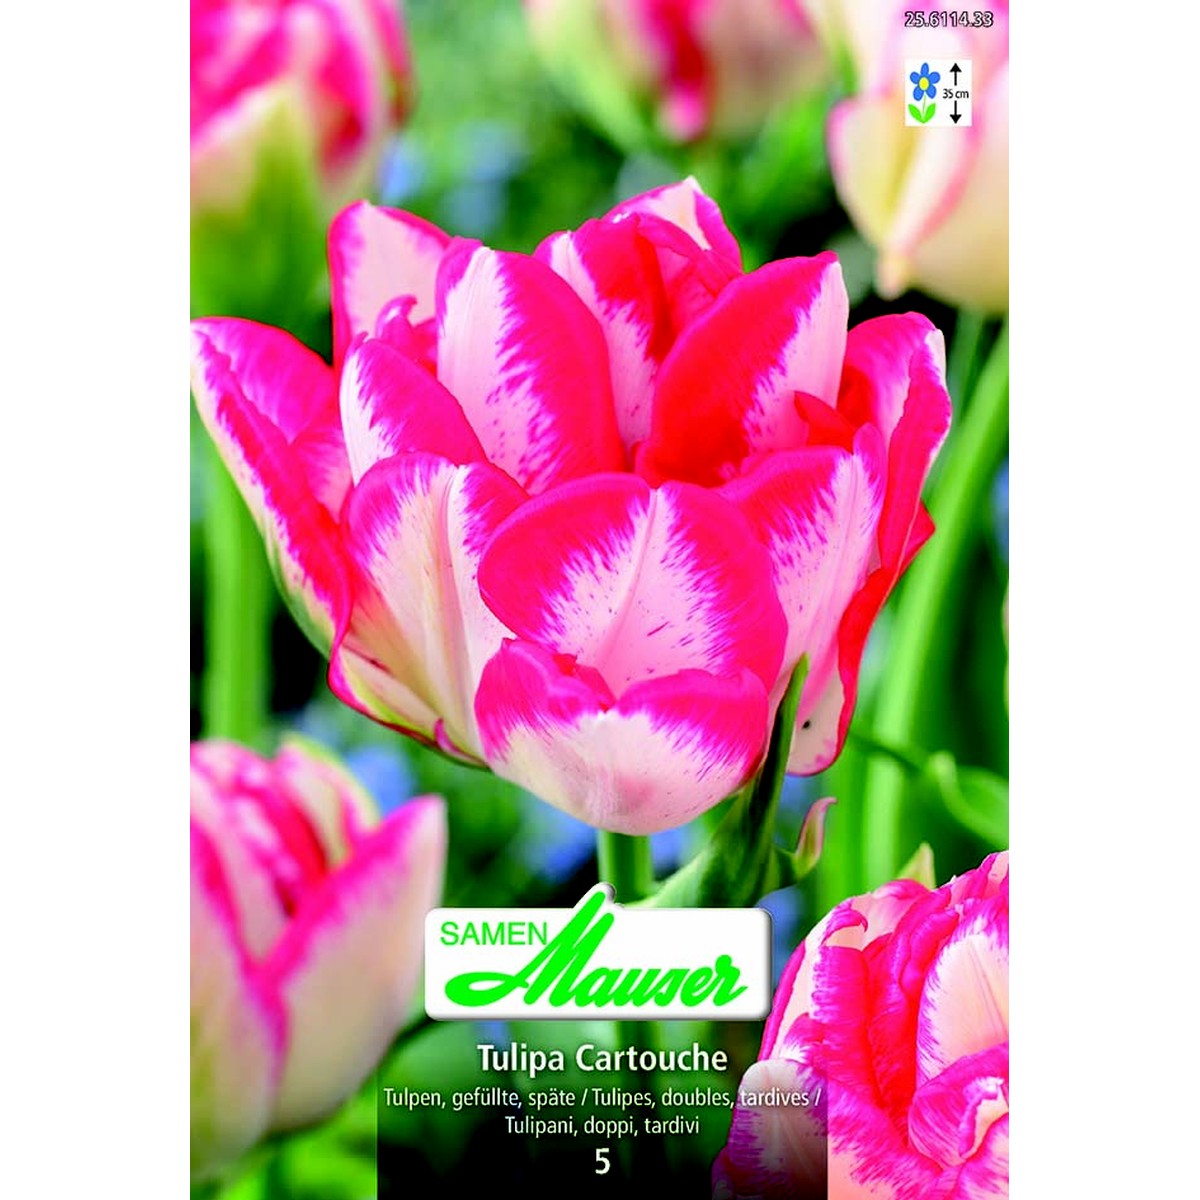   Tulipe TTD Cartouche 5  12/